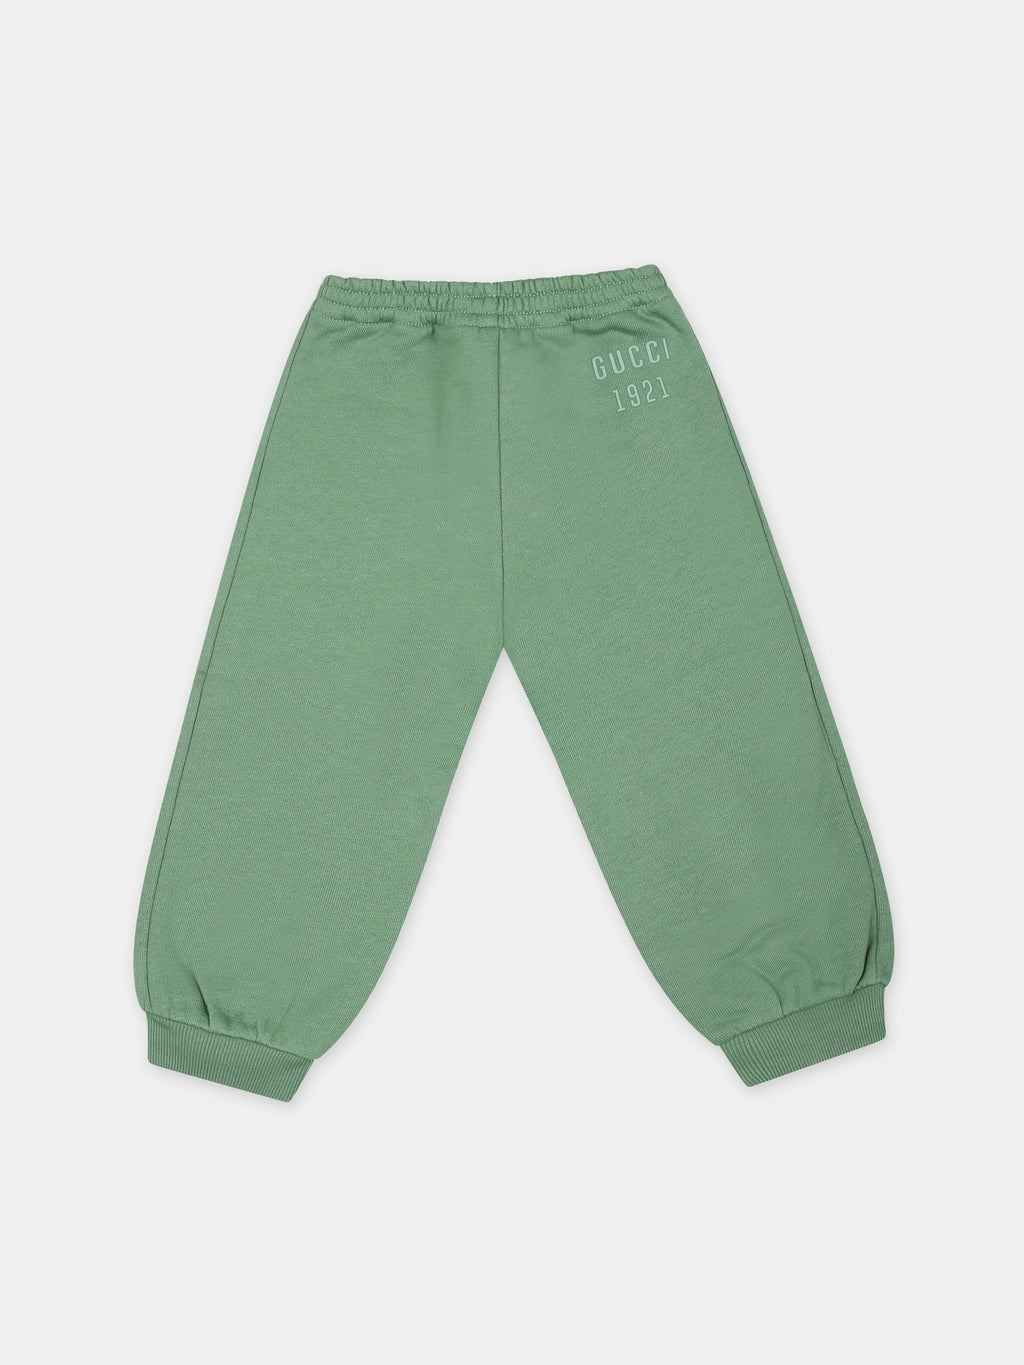 Pantalon vert pour bébé enfants avec logo Gucci 1921